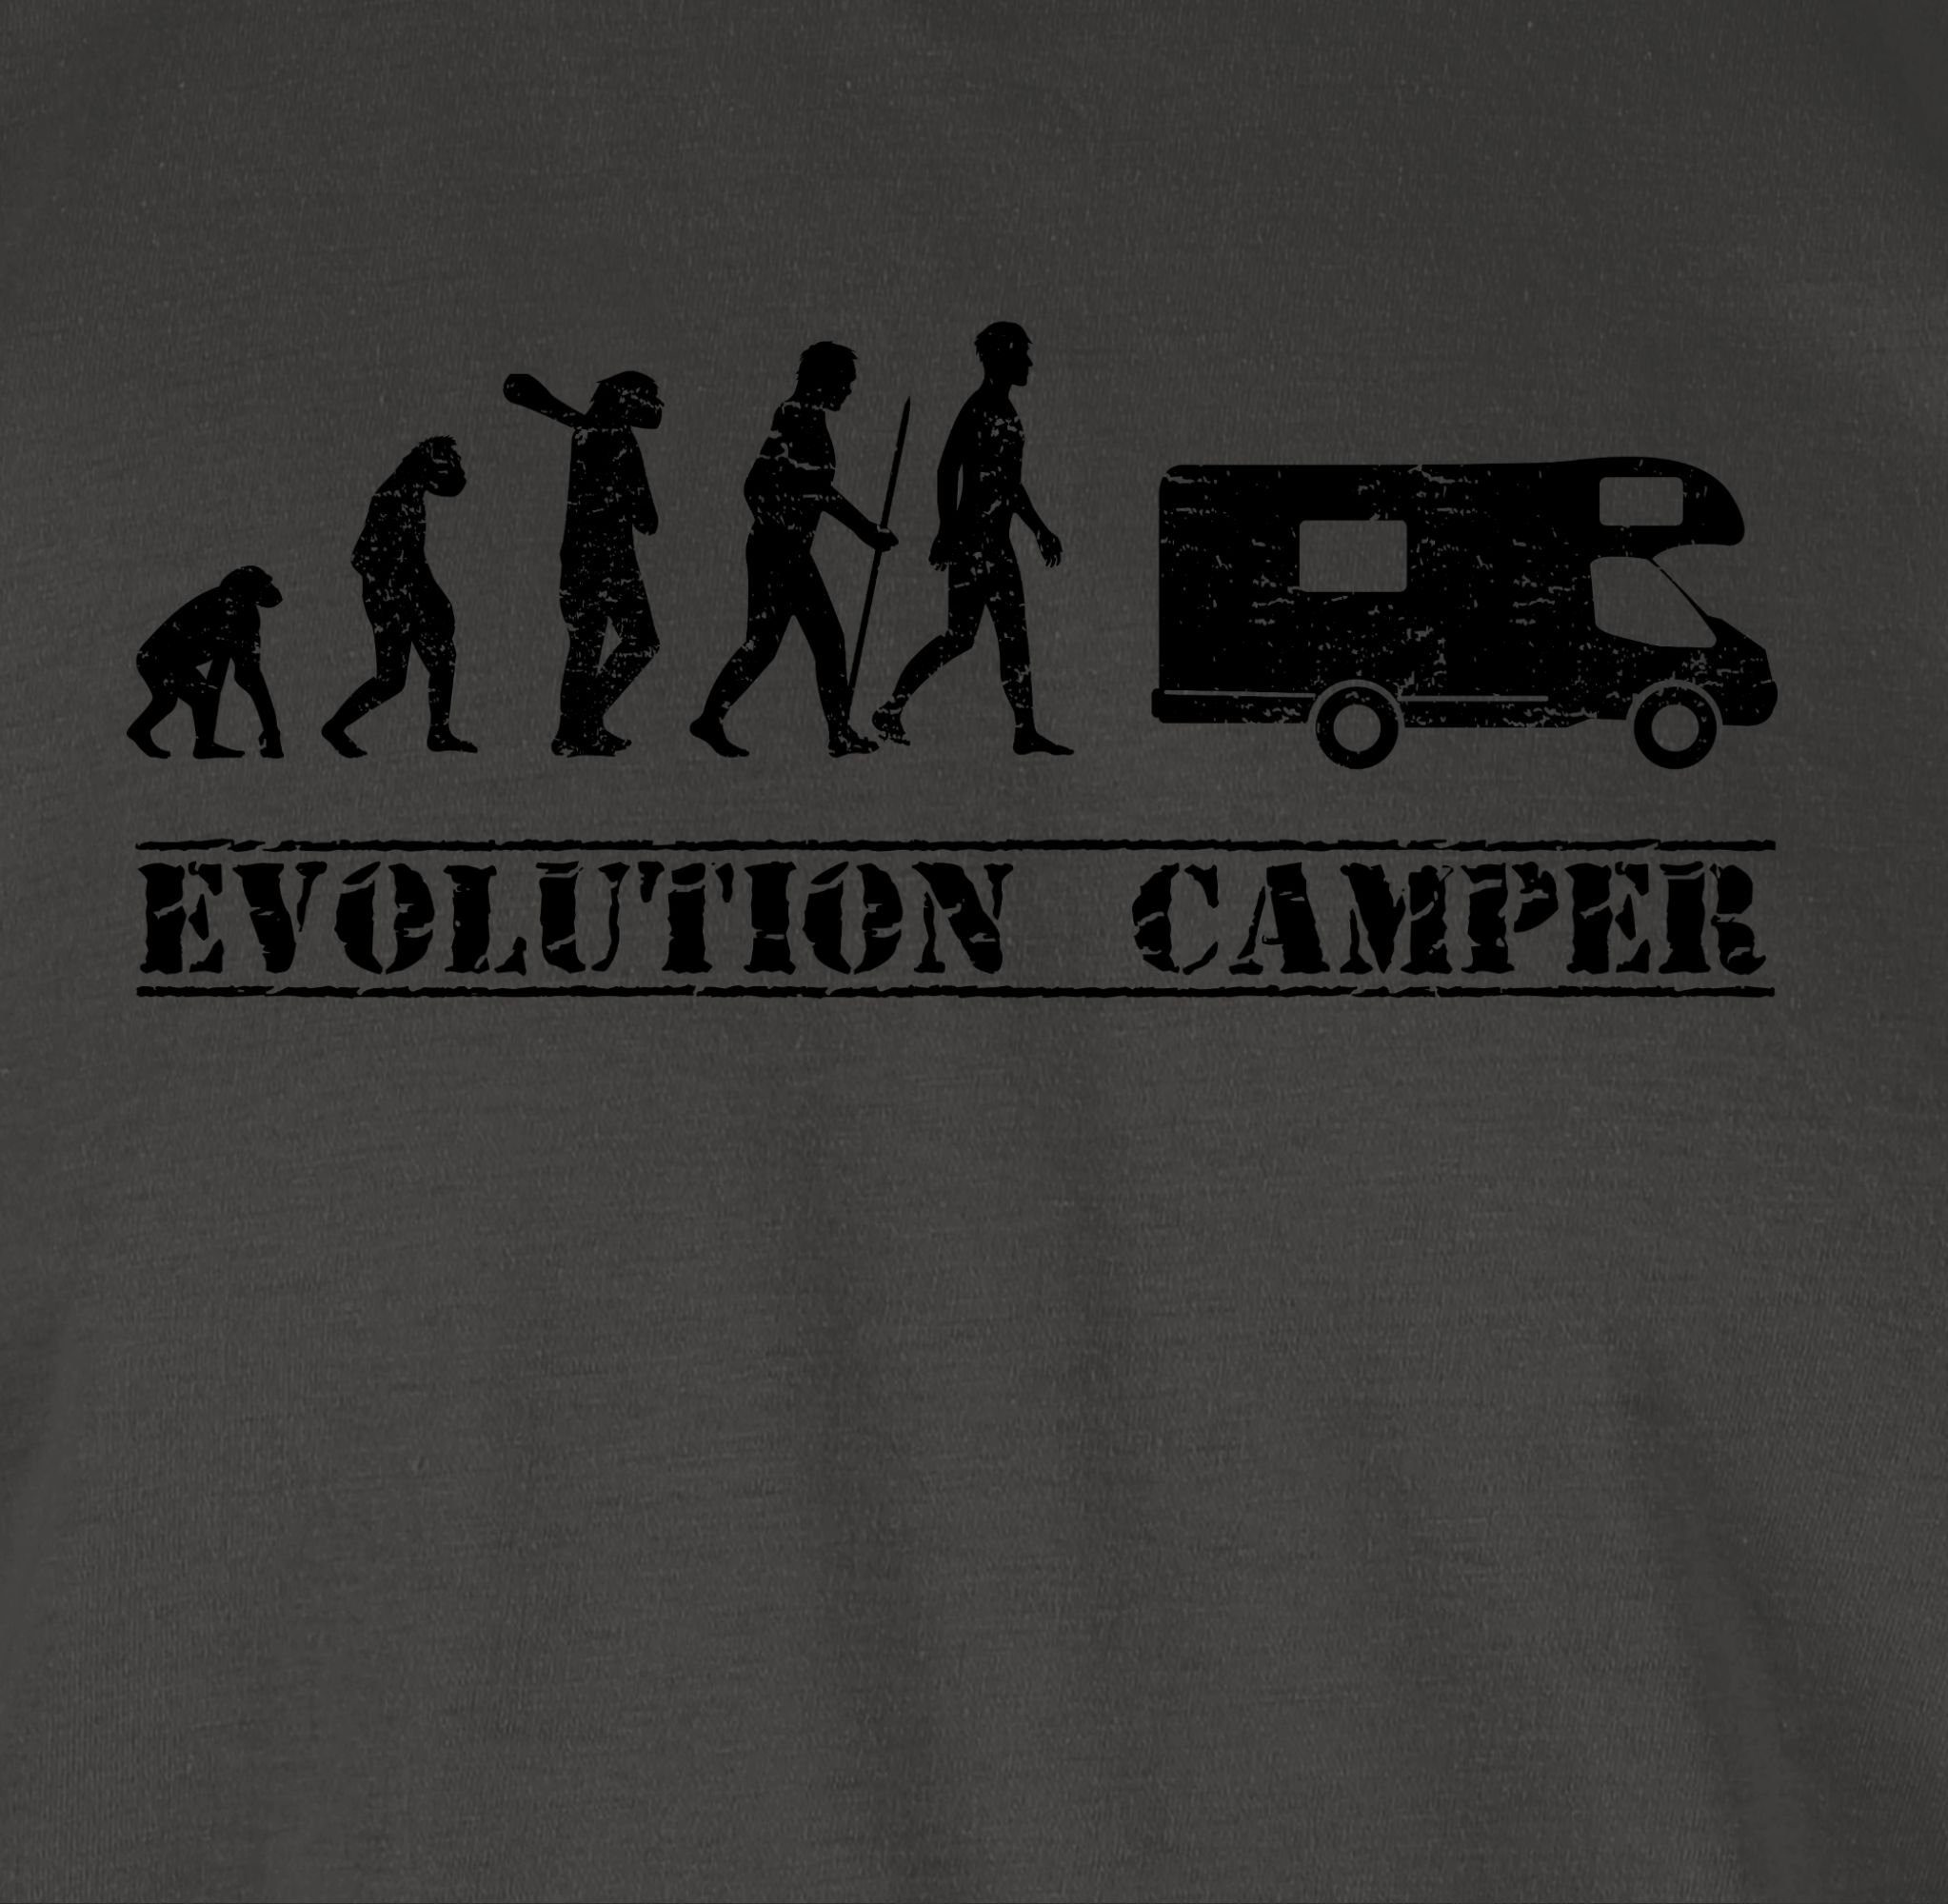 Dunkelgrau Evolution Outfit 01 Evolution Camper T-Shirt Shirtracer